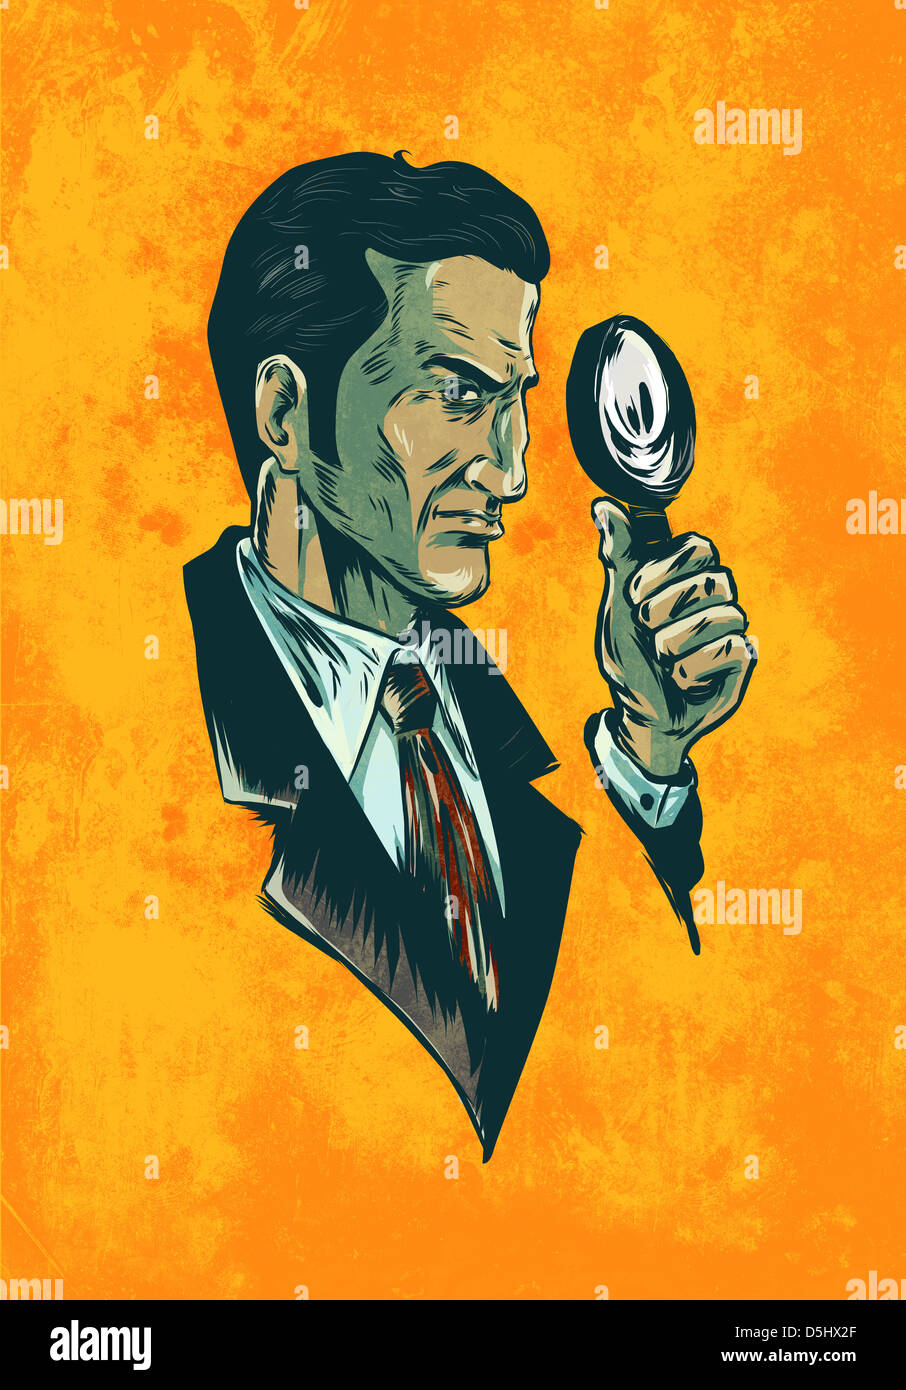 Image de l'homme illustration avec loupe incarnez un agent représentant sur fond orange Banque D'Images